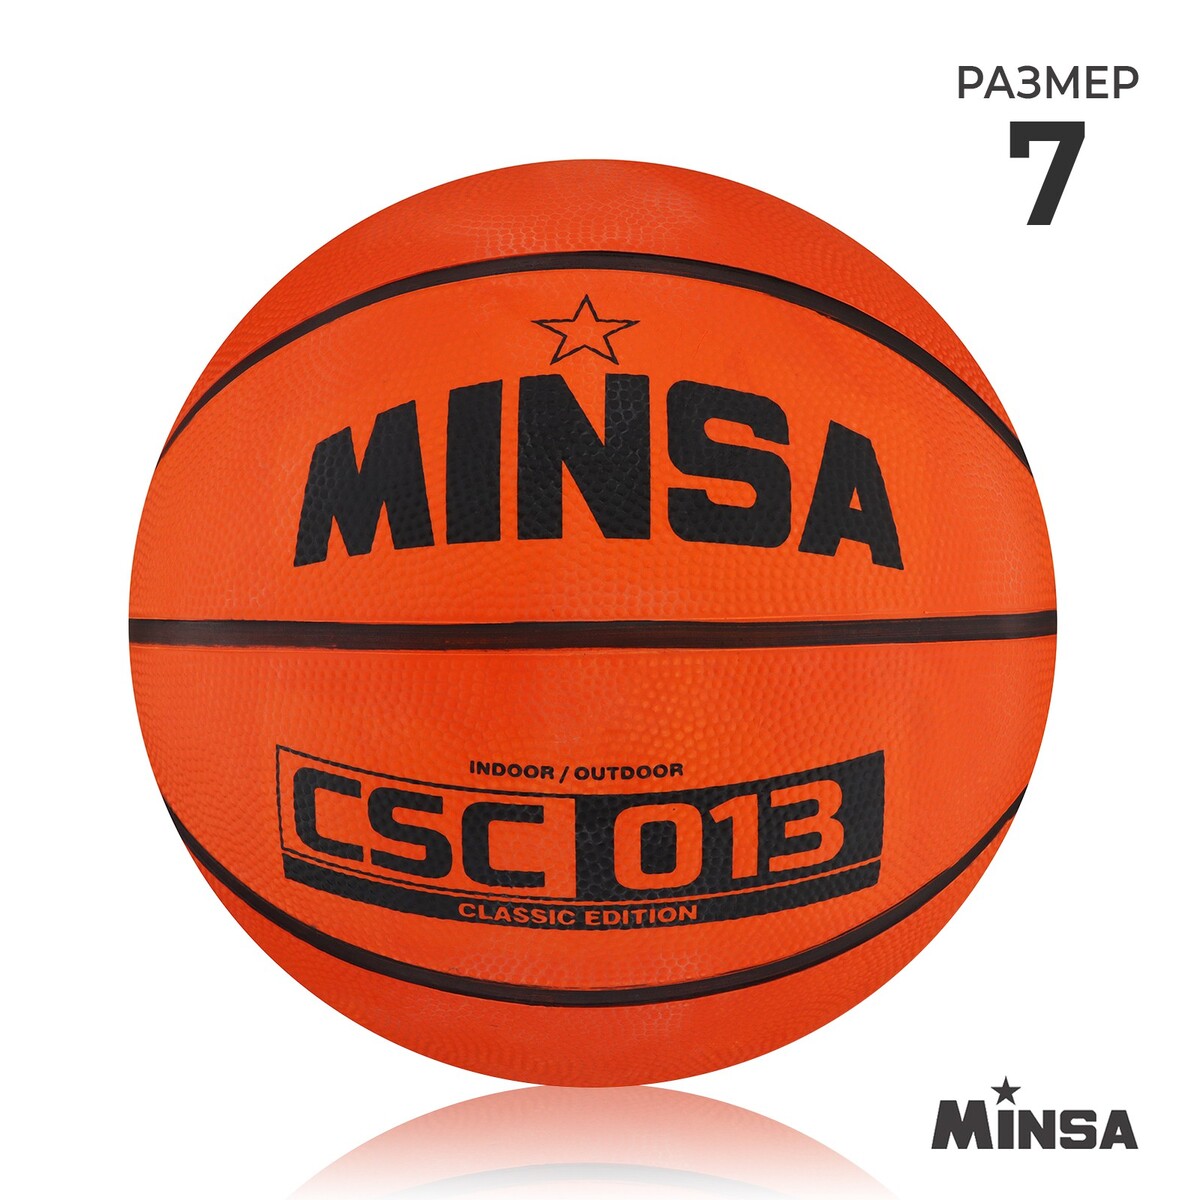 Мяч баскетбольный minsa csc 013, пвх, клееный, 8 панелей, р. 7 MINSA